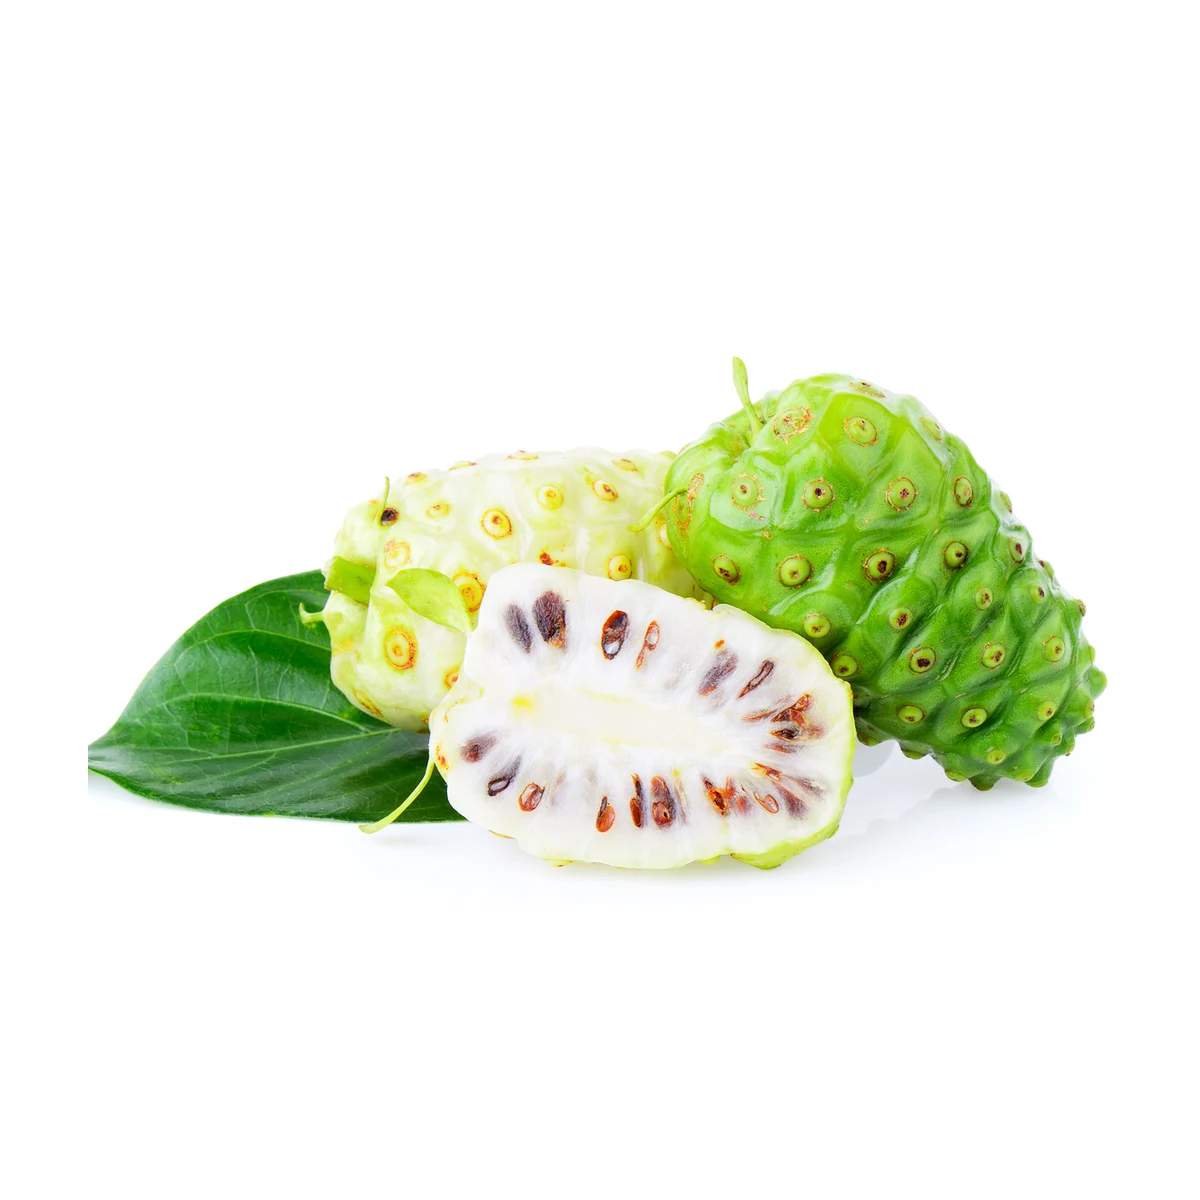 100% Wild Organic Noni Pure Juce 1L/100L/1000L Samoa NONI Fruit Juce Supplier